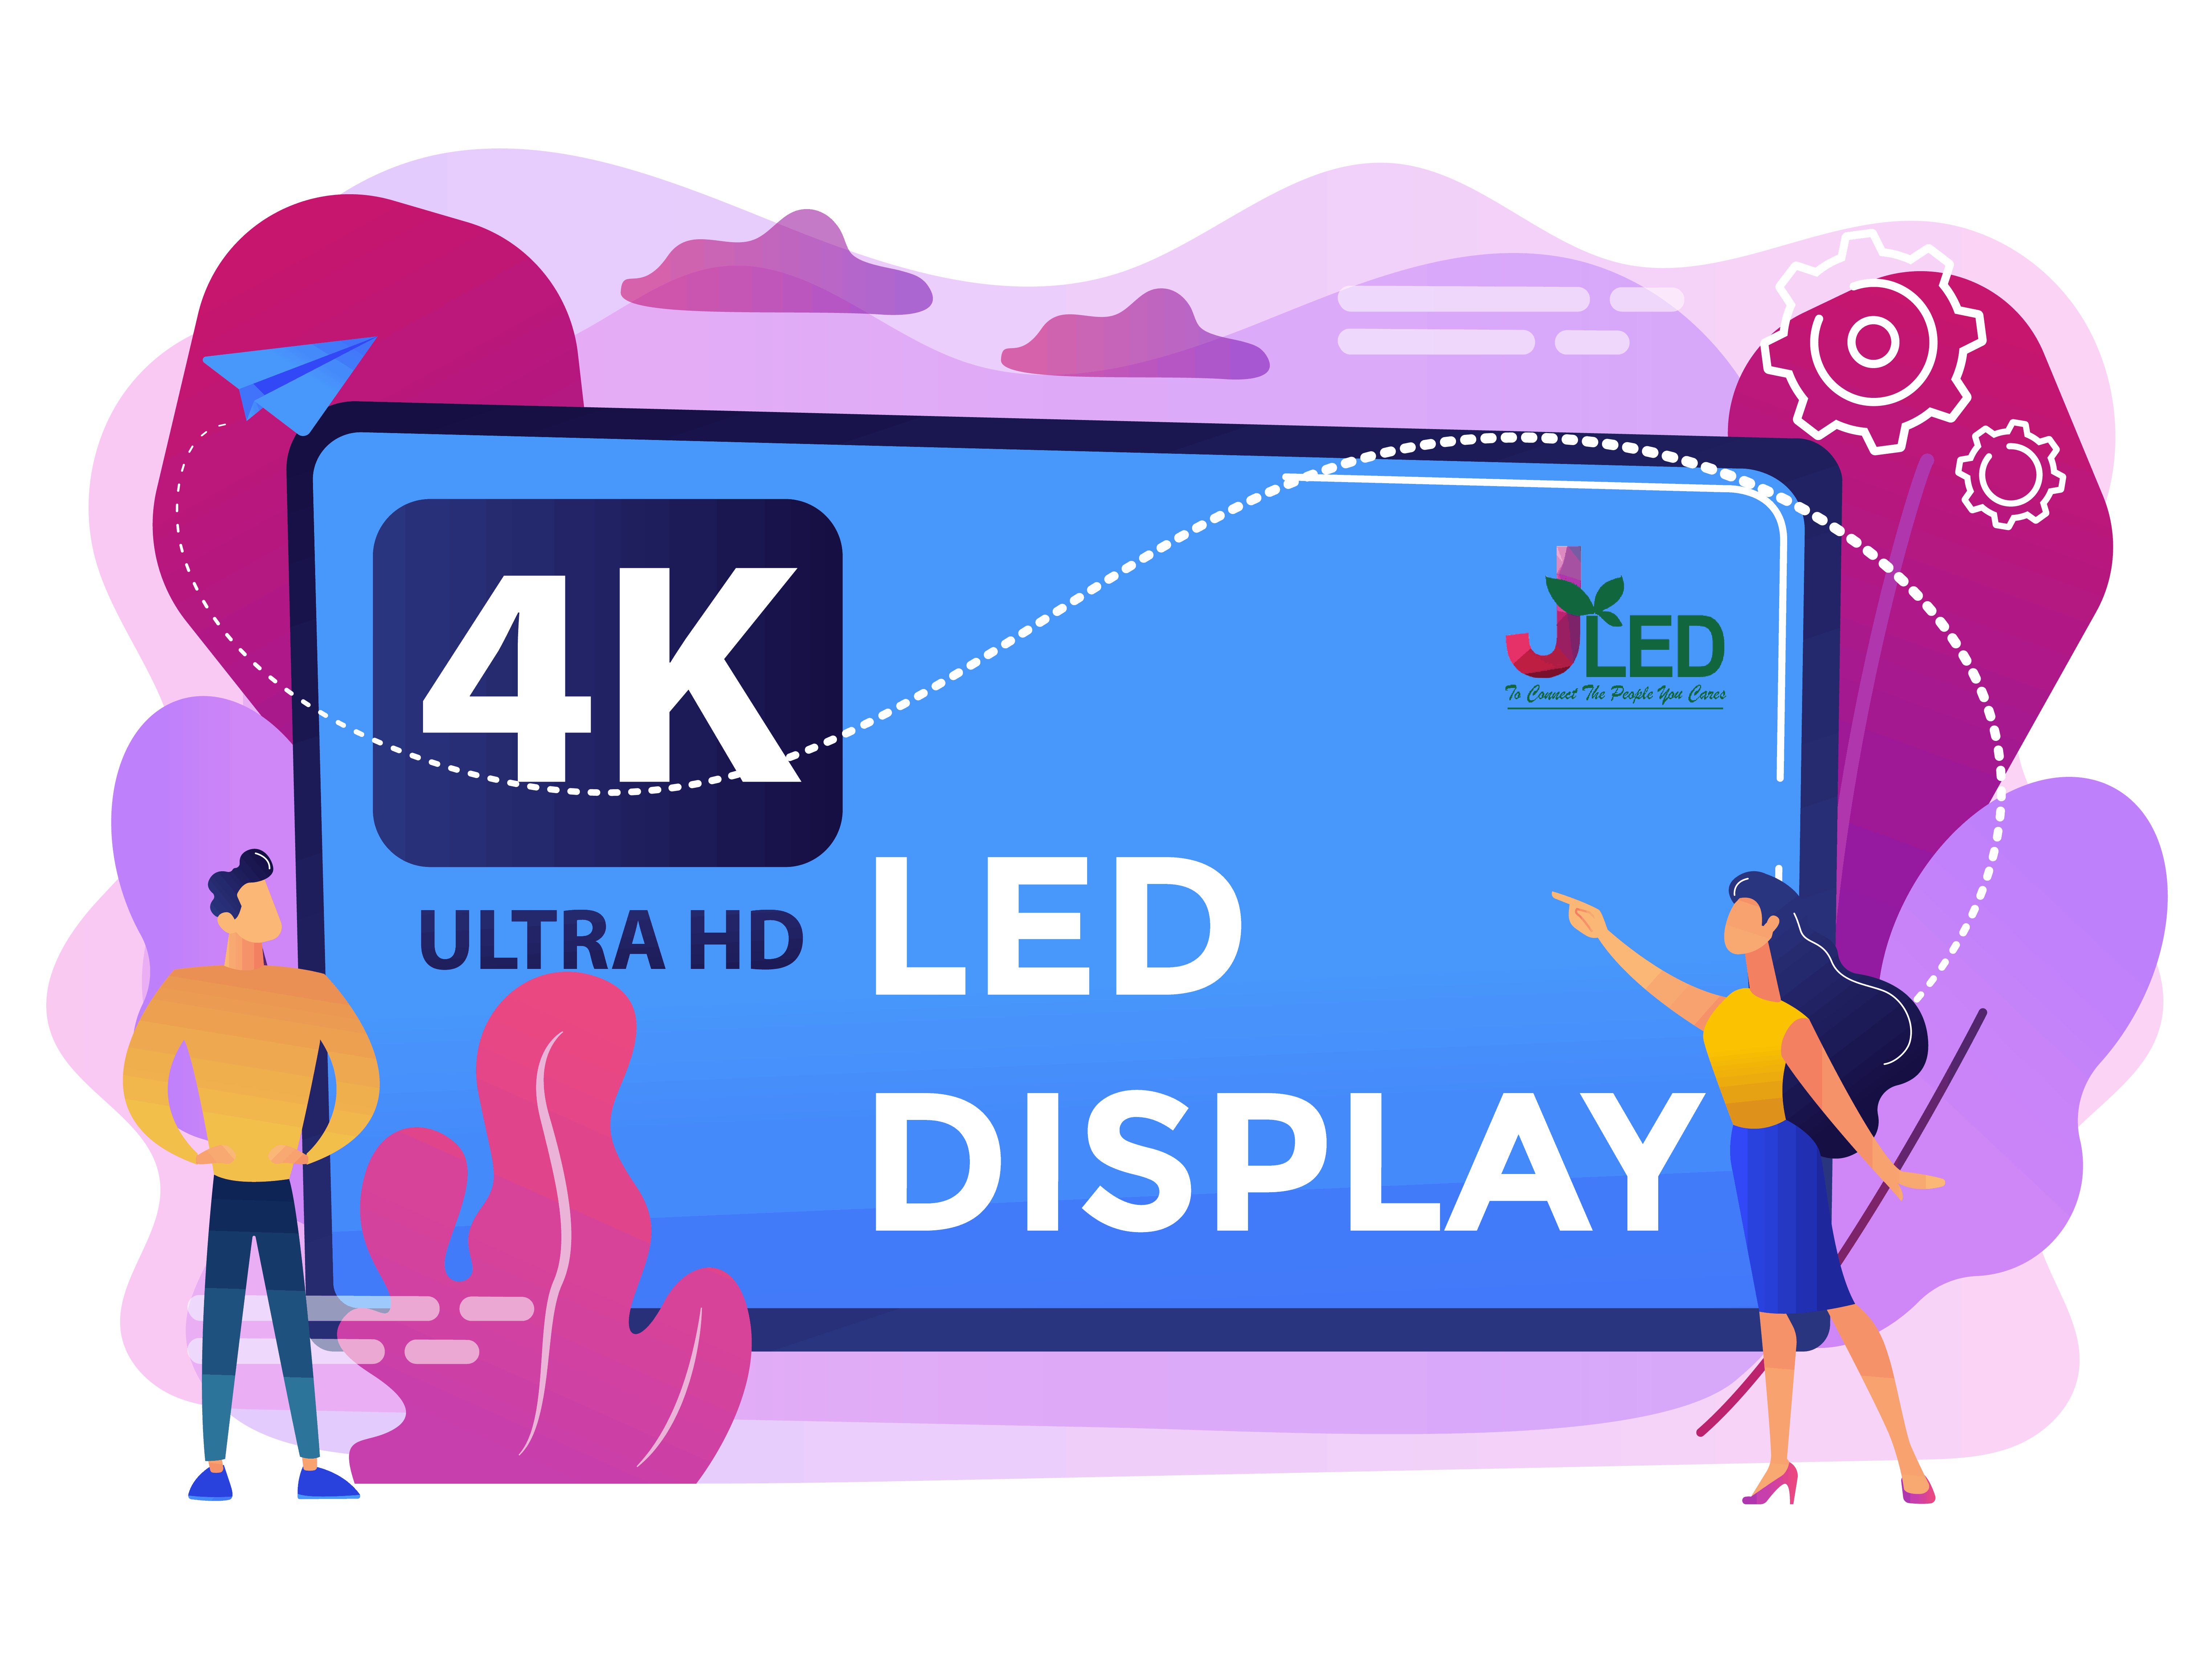 4K led display jled 2021